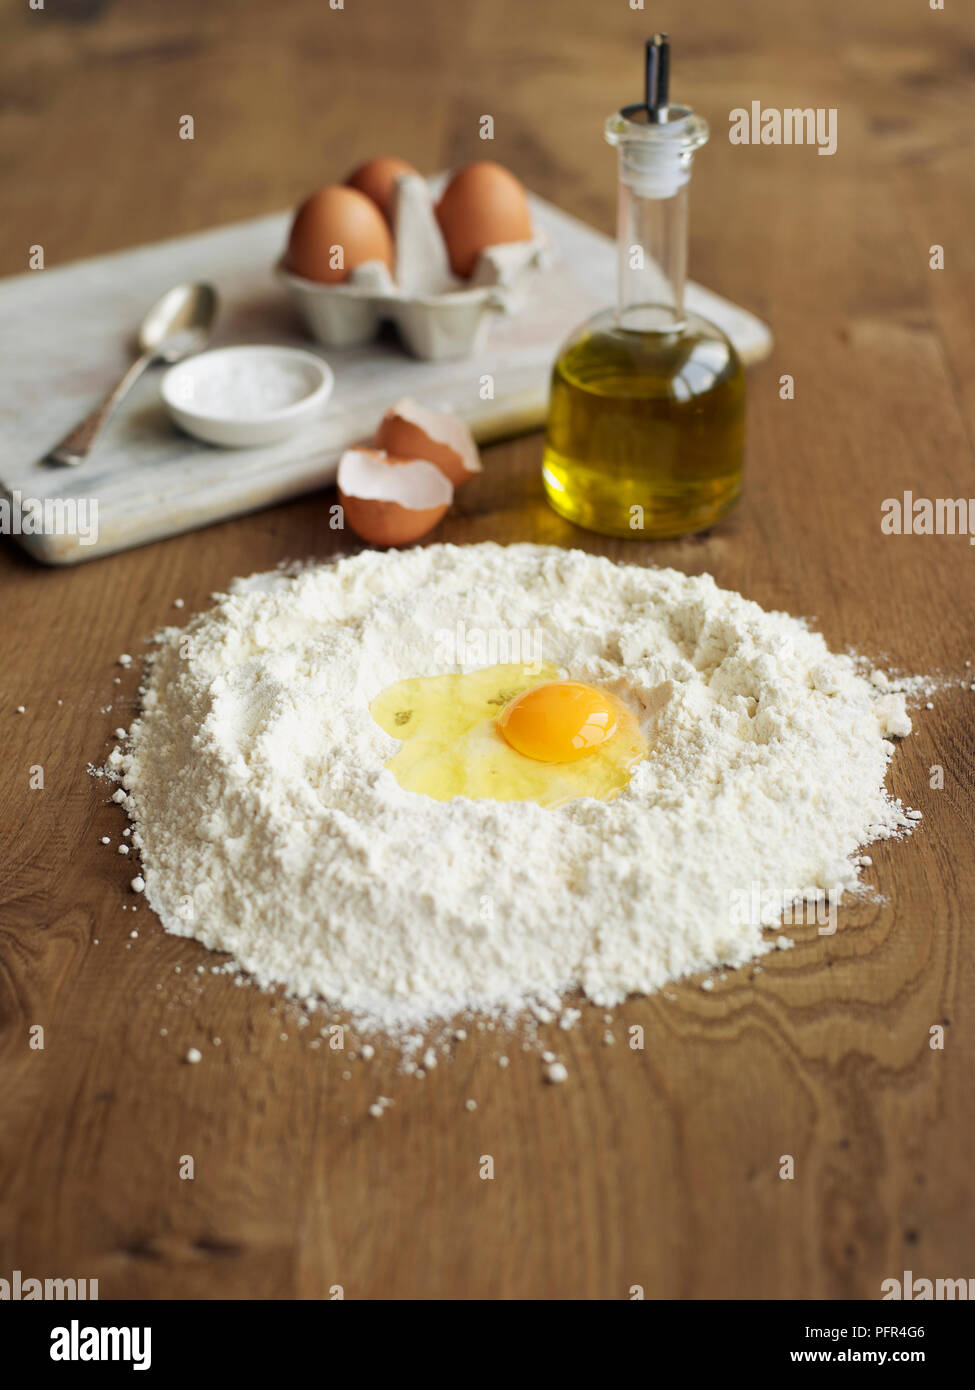 Uovo, Olio d'oliva e farina pronta per essere miscelati insieme (rendendo la pasta) Foto Stock